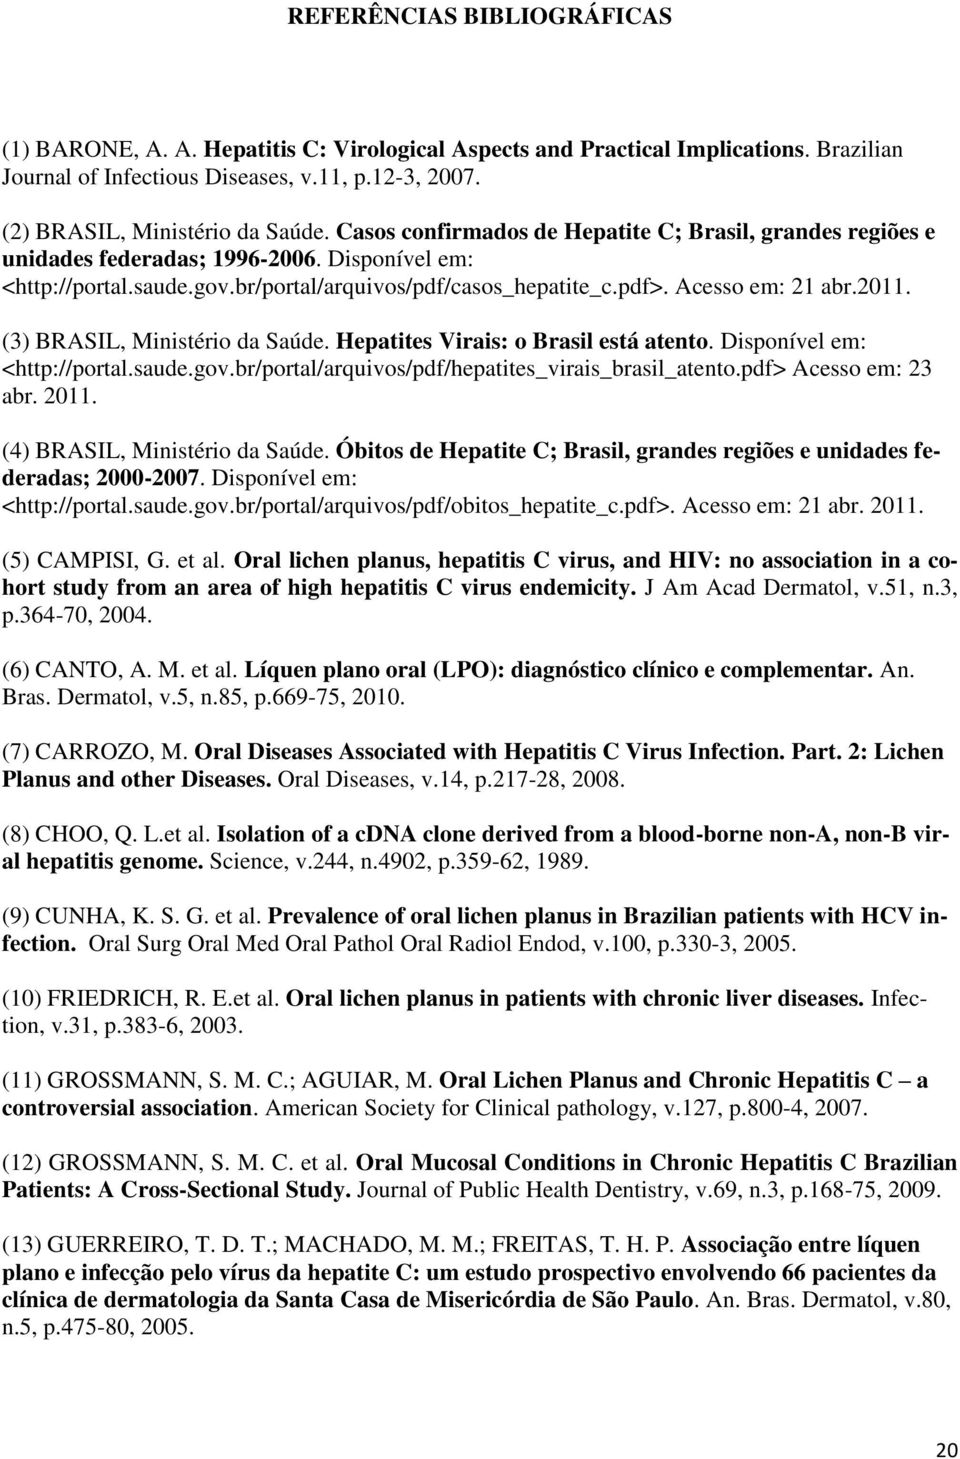 (3) BRASIL, Ministério da Saúde. Hepatites Virais: o Brasil está atento. Disponível em: <http://portal.saude.gov.br/portal/arquivos/pdf/hepatites_virais_brasil_atento.pdf> Acesso em: 23 abr. 2011.